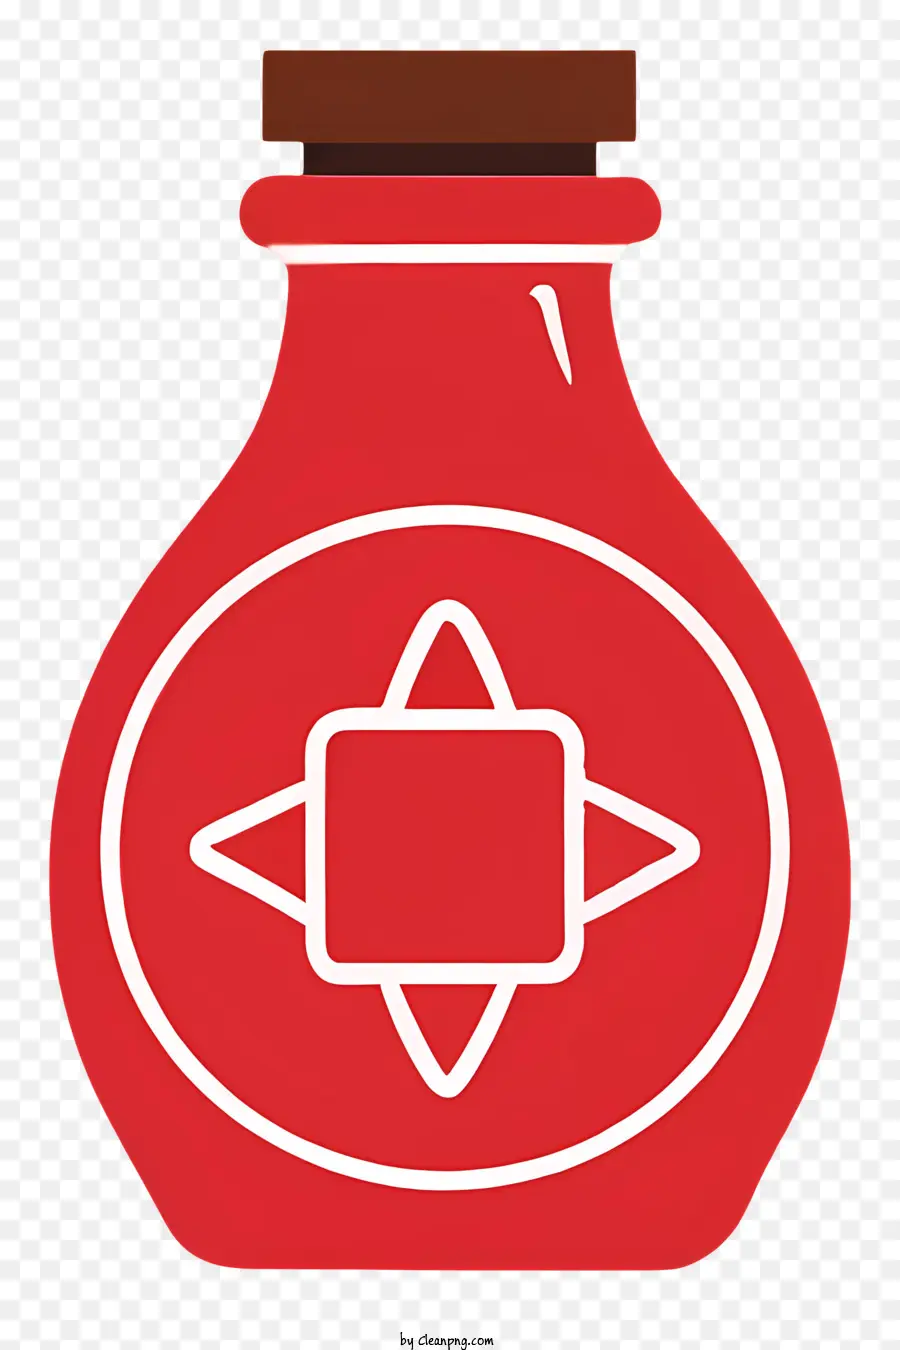 Weißer Kreis - Rote Glasflasche mit weißem Kreis und Holzstopper auf schwarzem Hintergrund